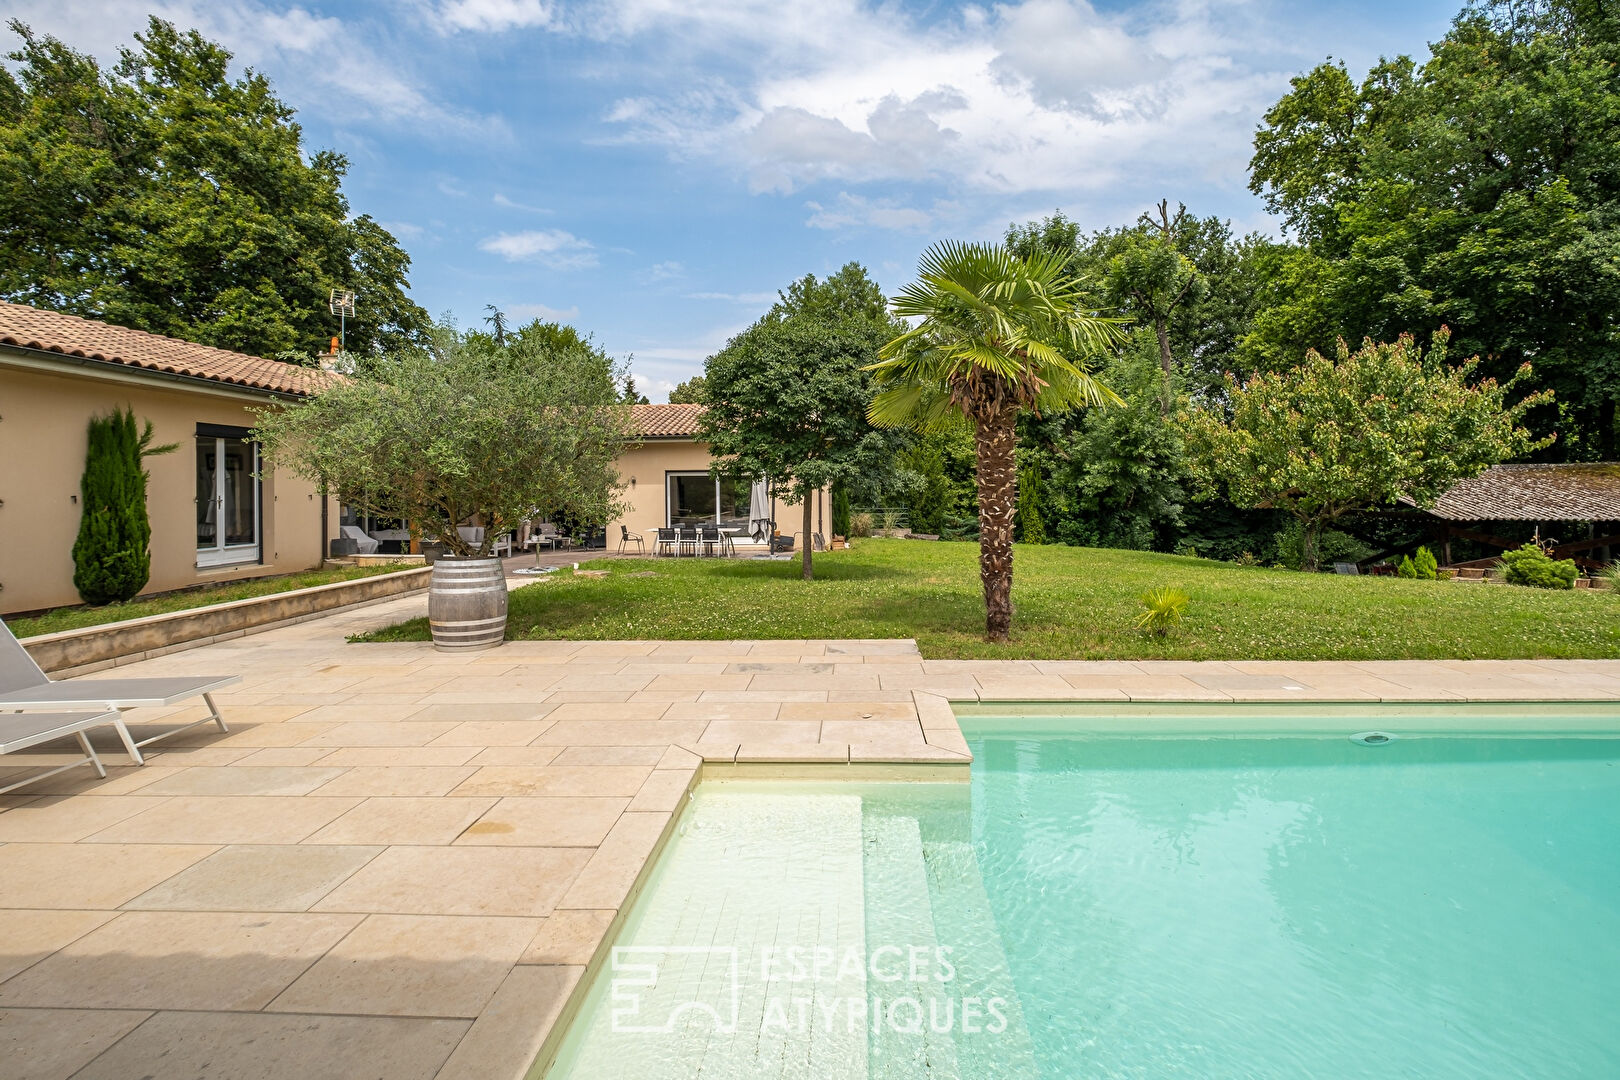 Villa de plain pied avec piscine à proximité du centre d’Ecully